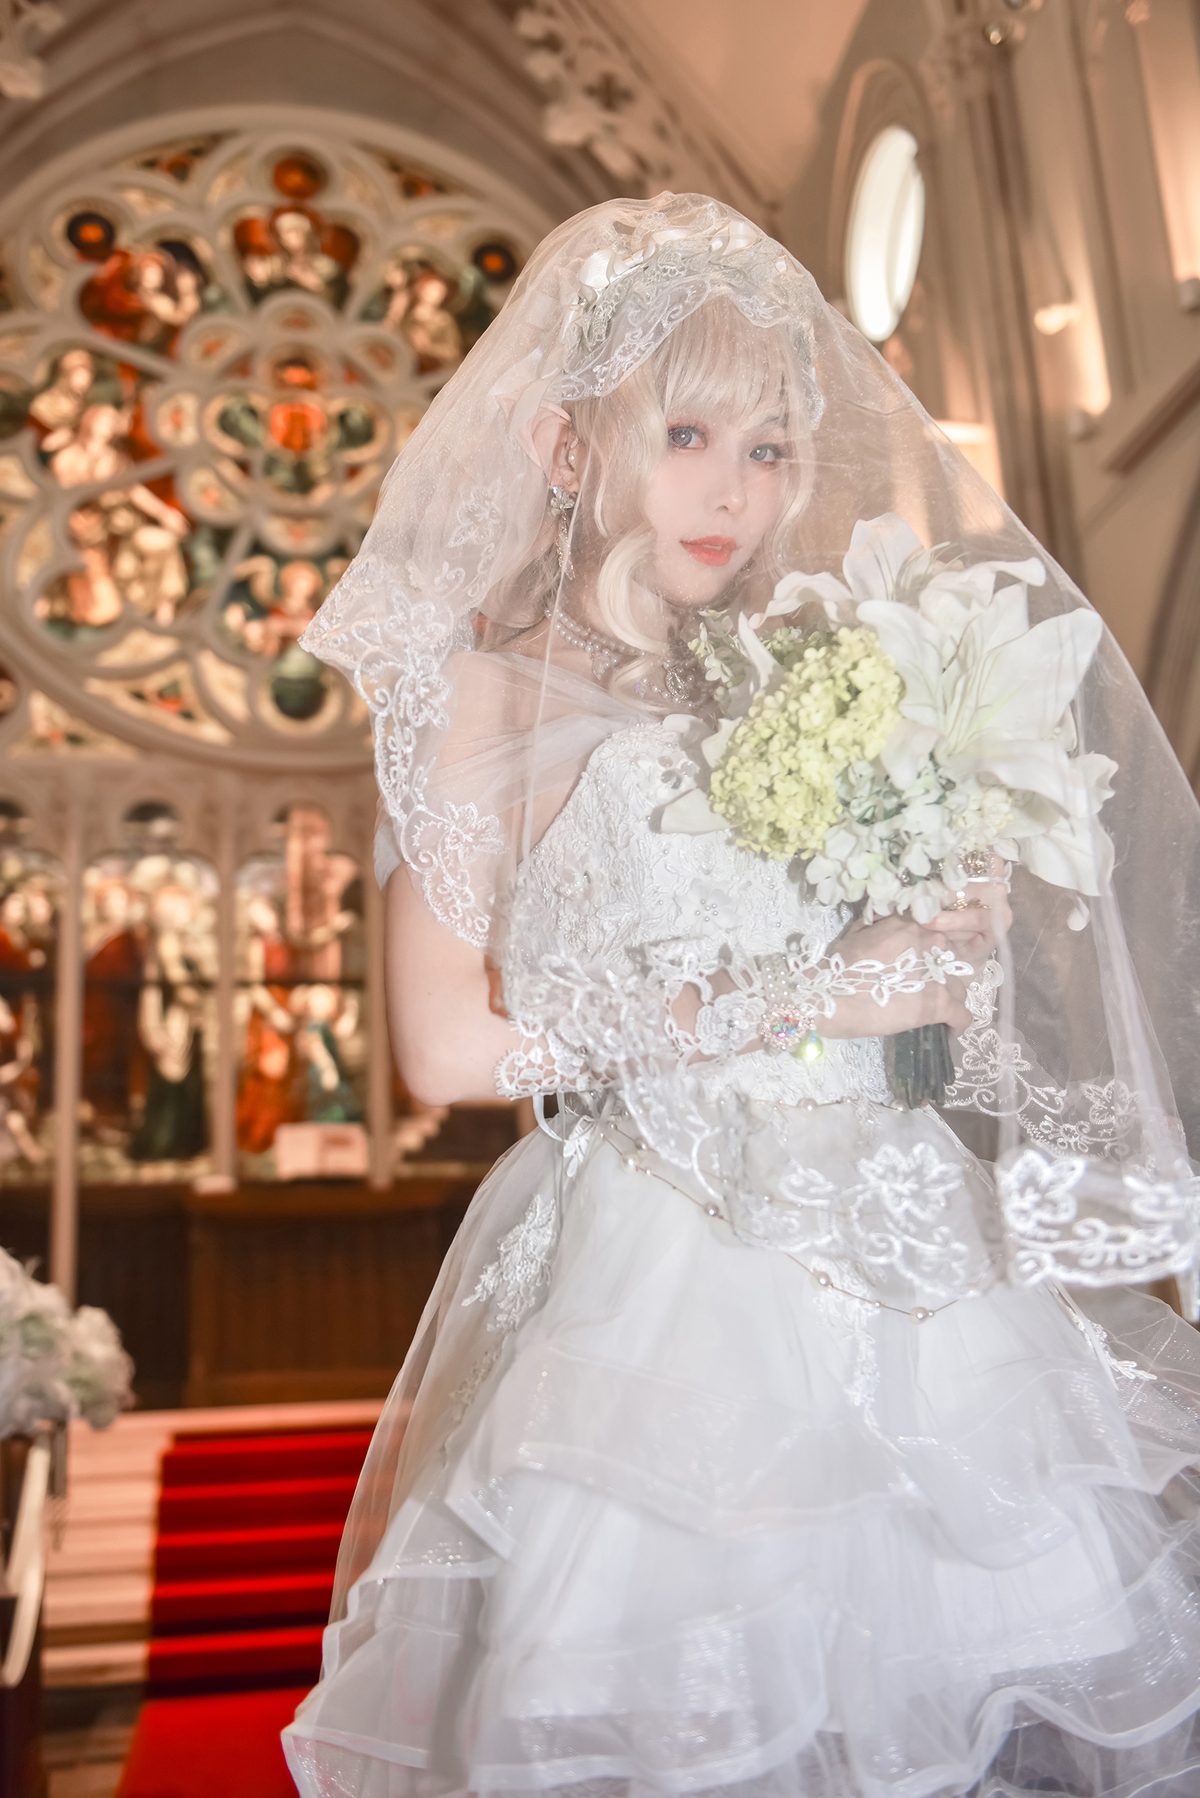 Coser@Ely_eee ElyEE子 Bride And Lingerie 0041 8652162196.jpg